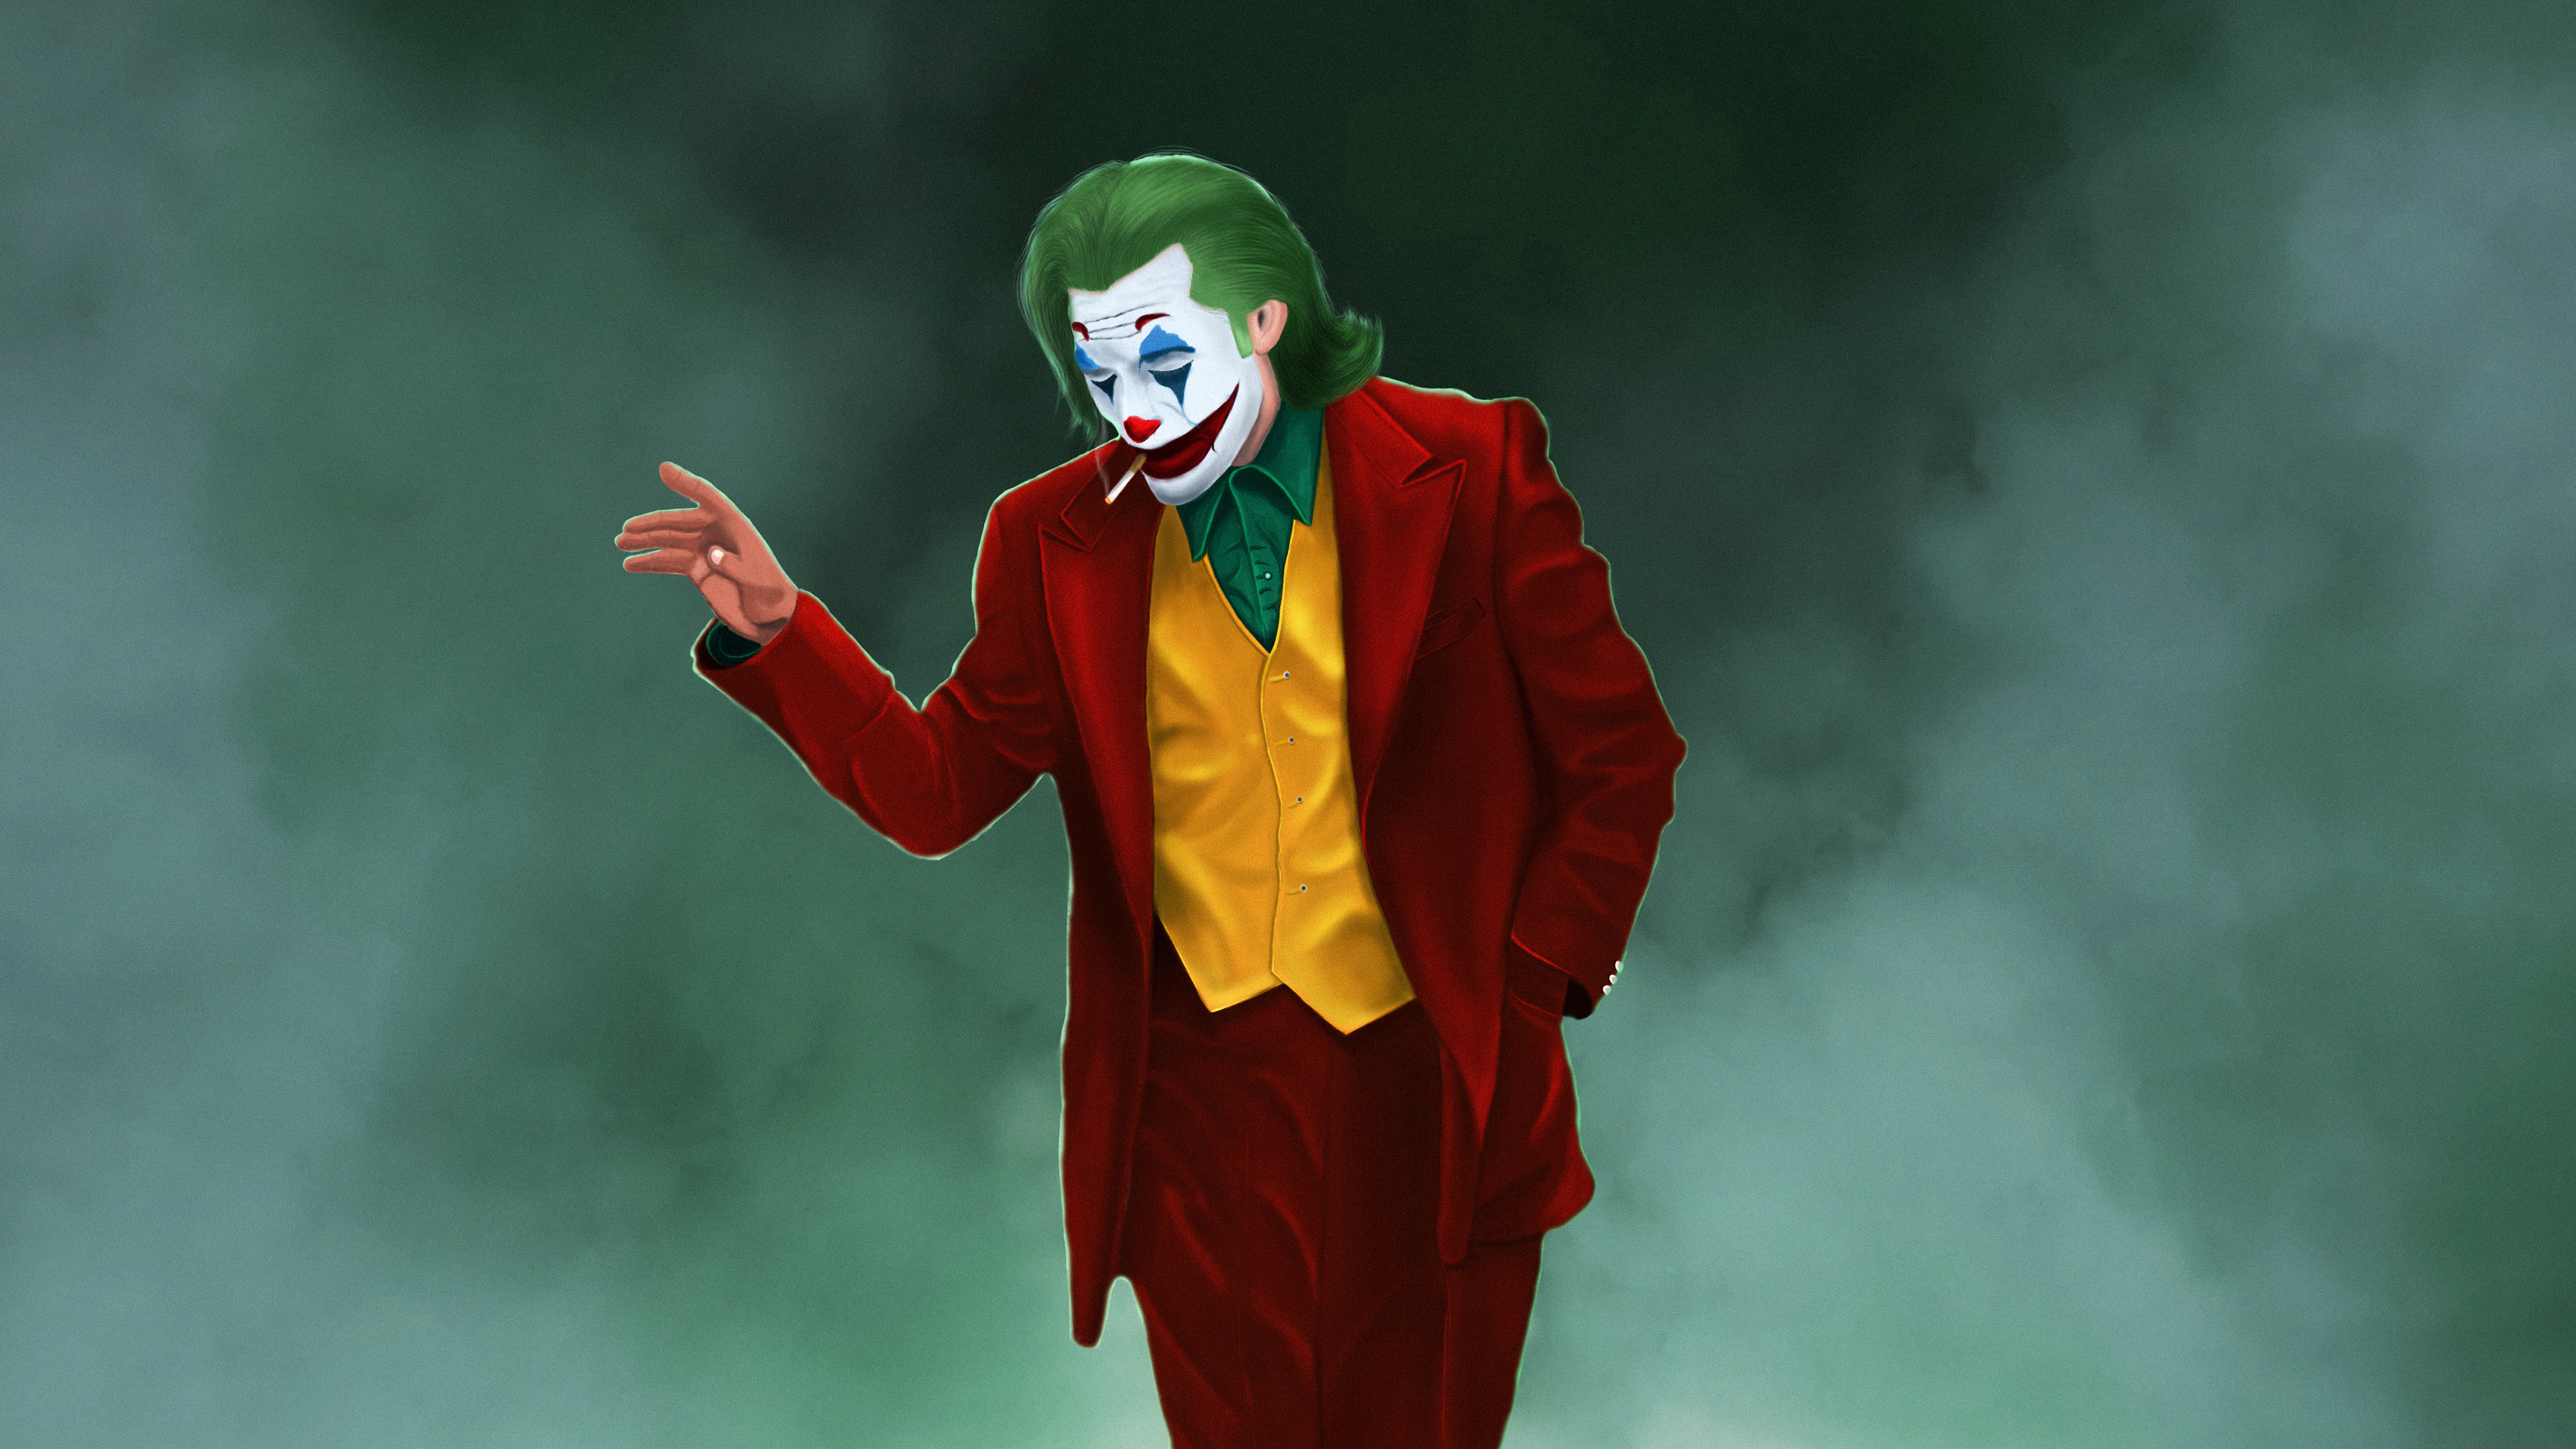 Joker Hd 4K Wallpapers